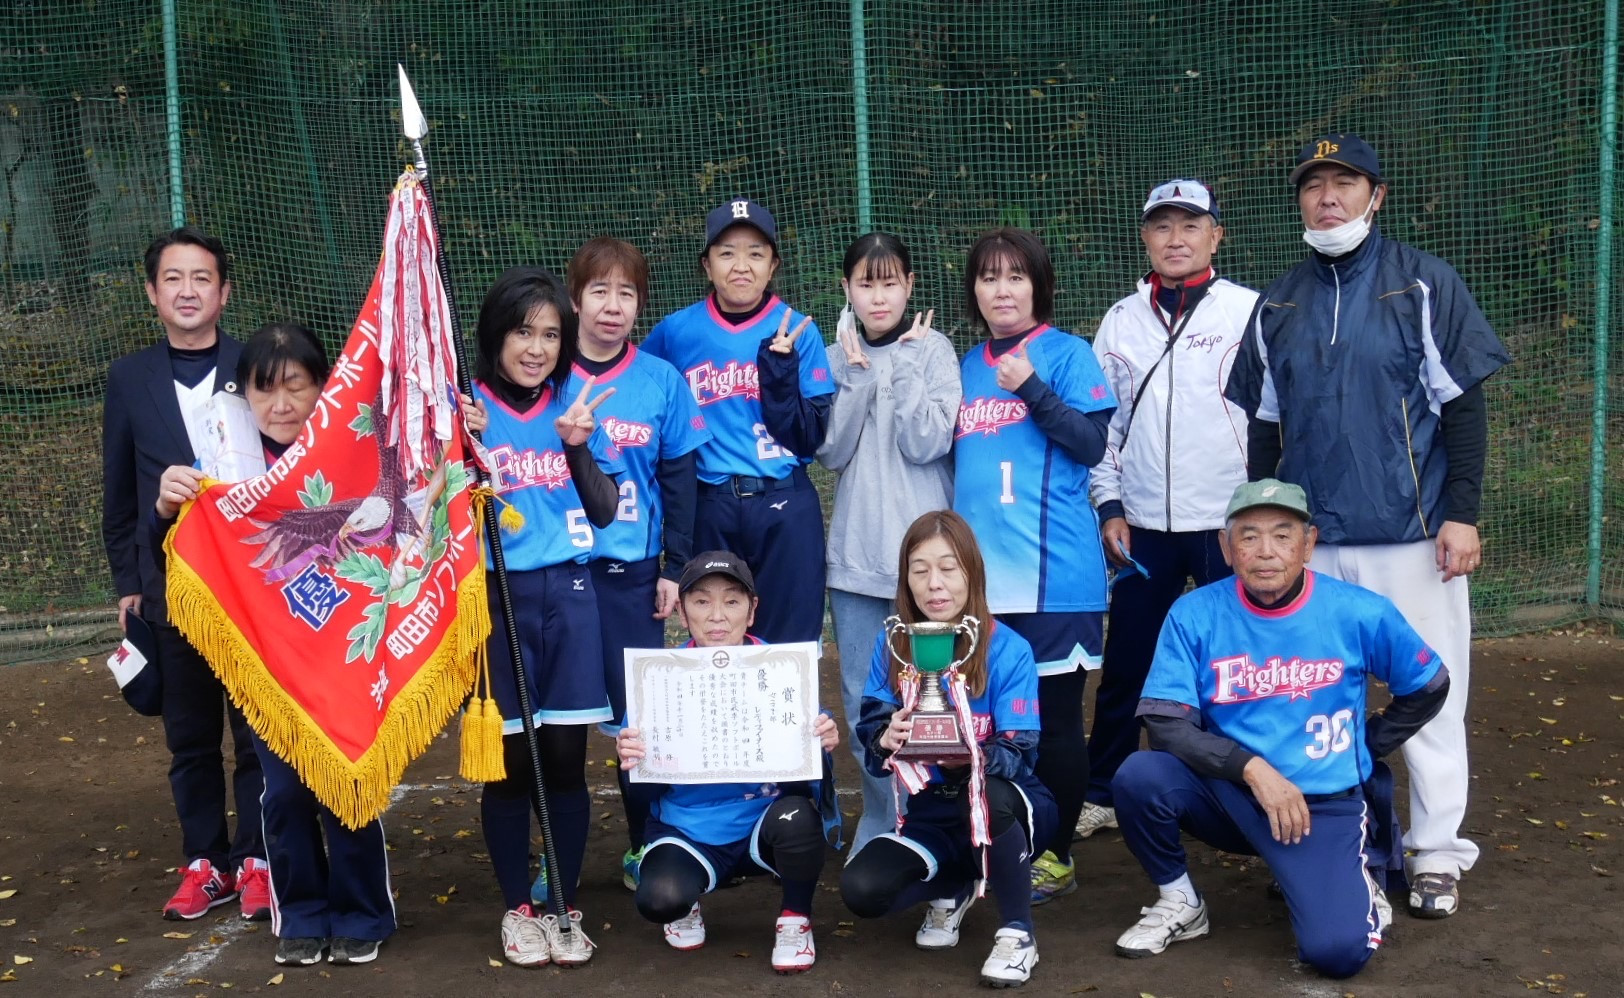 町田市民秋季ソフトボール大会は、本日、女子決勝が行われました。おかげさまで女子は閉幕しました。  ○クインリーグ優勝　旭町グリーンフレンズ ○女子1部優勝　レディファイターズ  おめでとうございます。